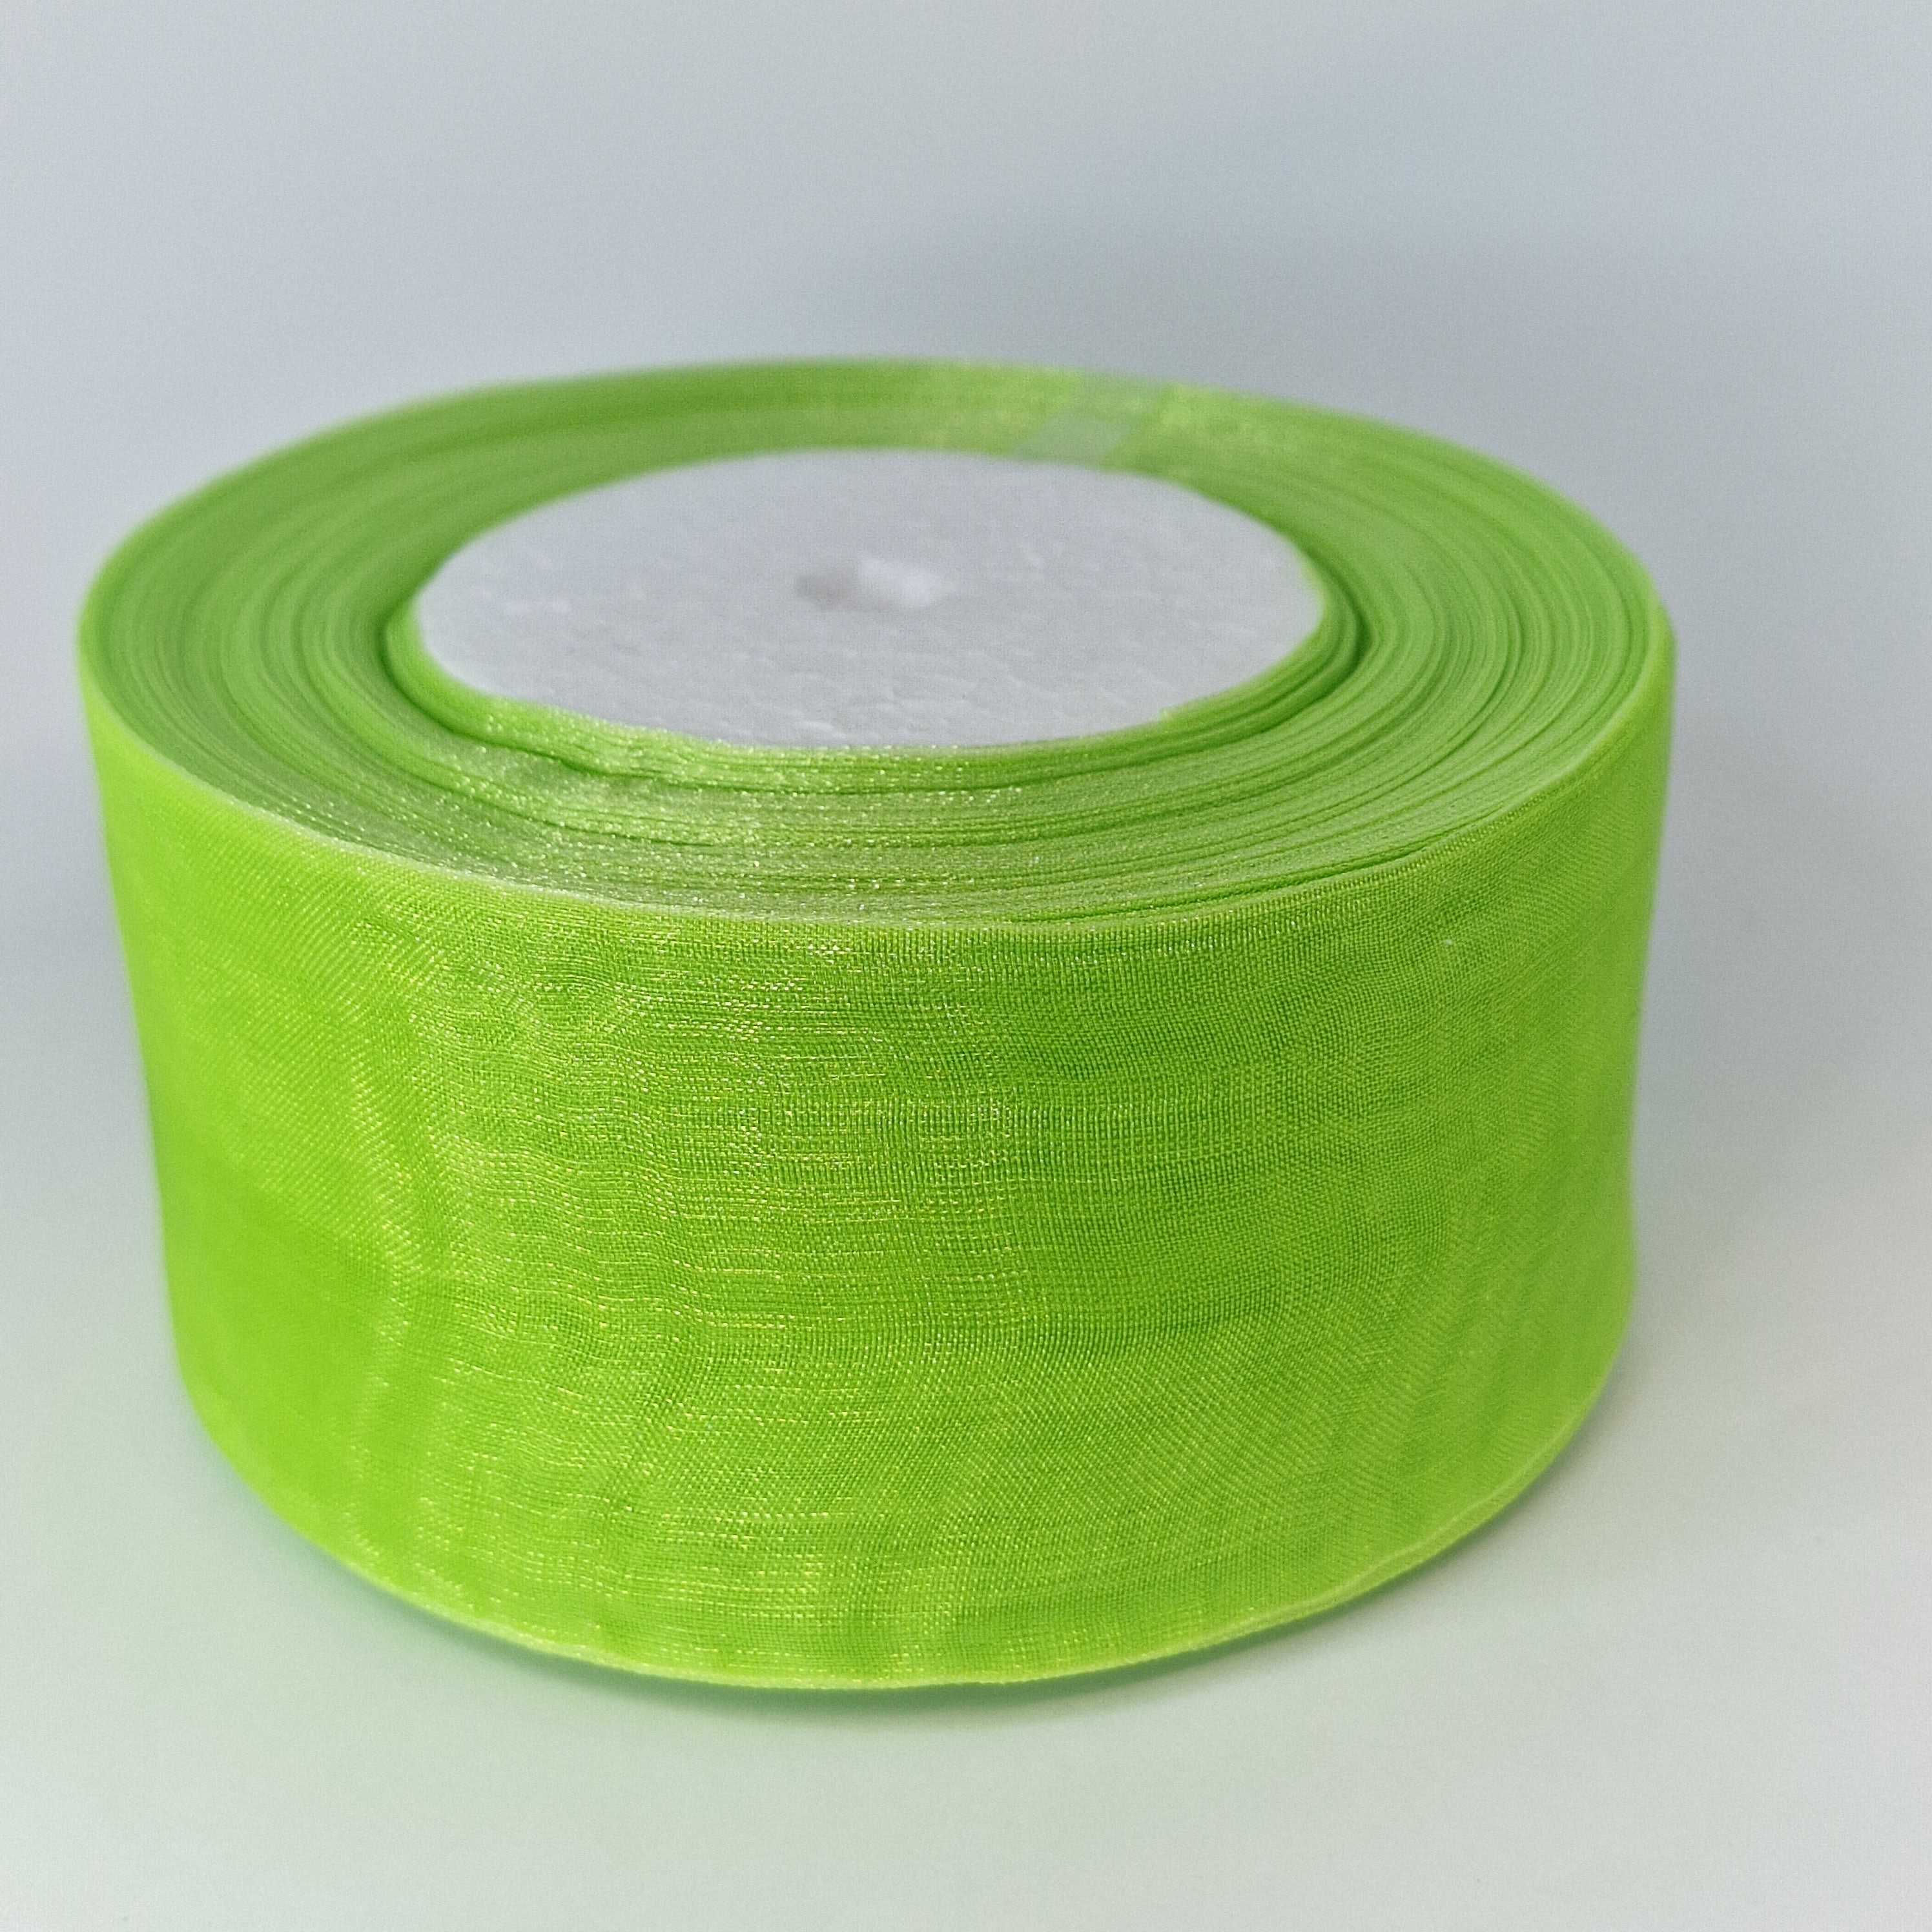 MajorCrafts 40mm 45metres Bright Green Sheer Organza Fabric Ribbon Roll R1126